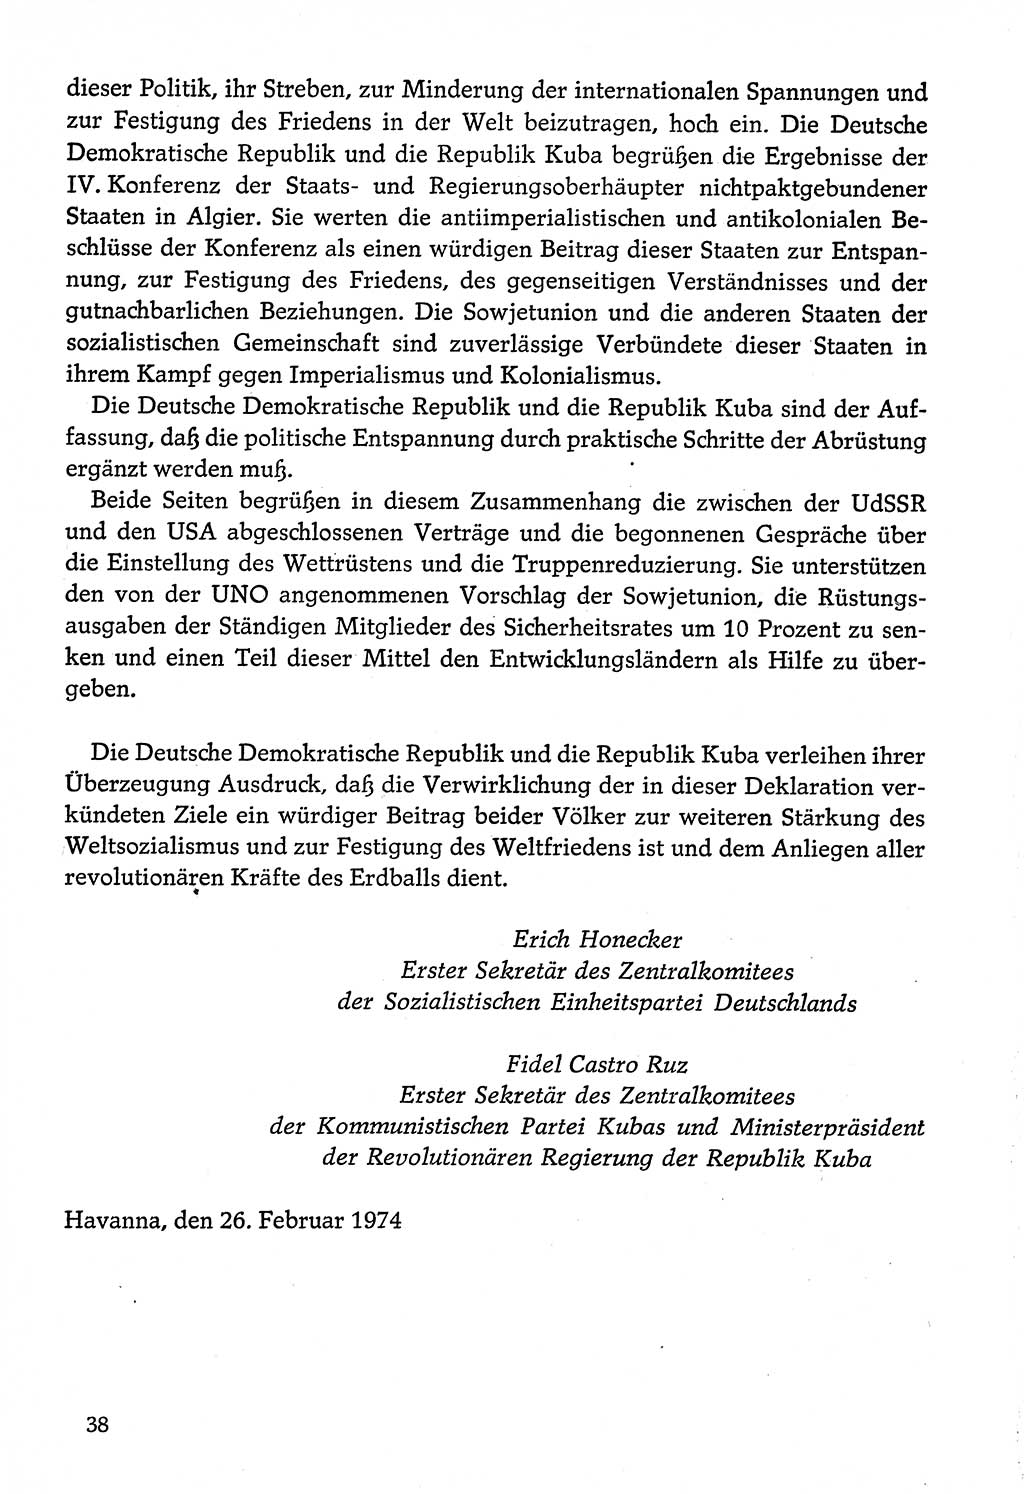 Dokumente der Sozialistischen Einheitspartei Deutschlands (SED) [Deutsche Demokratische Republik (DDR)] 1974-1975, Seite 38 (Dok. SED DDR 1978, Bd. ⅩⅤ, S. 38)